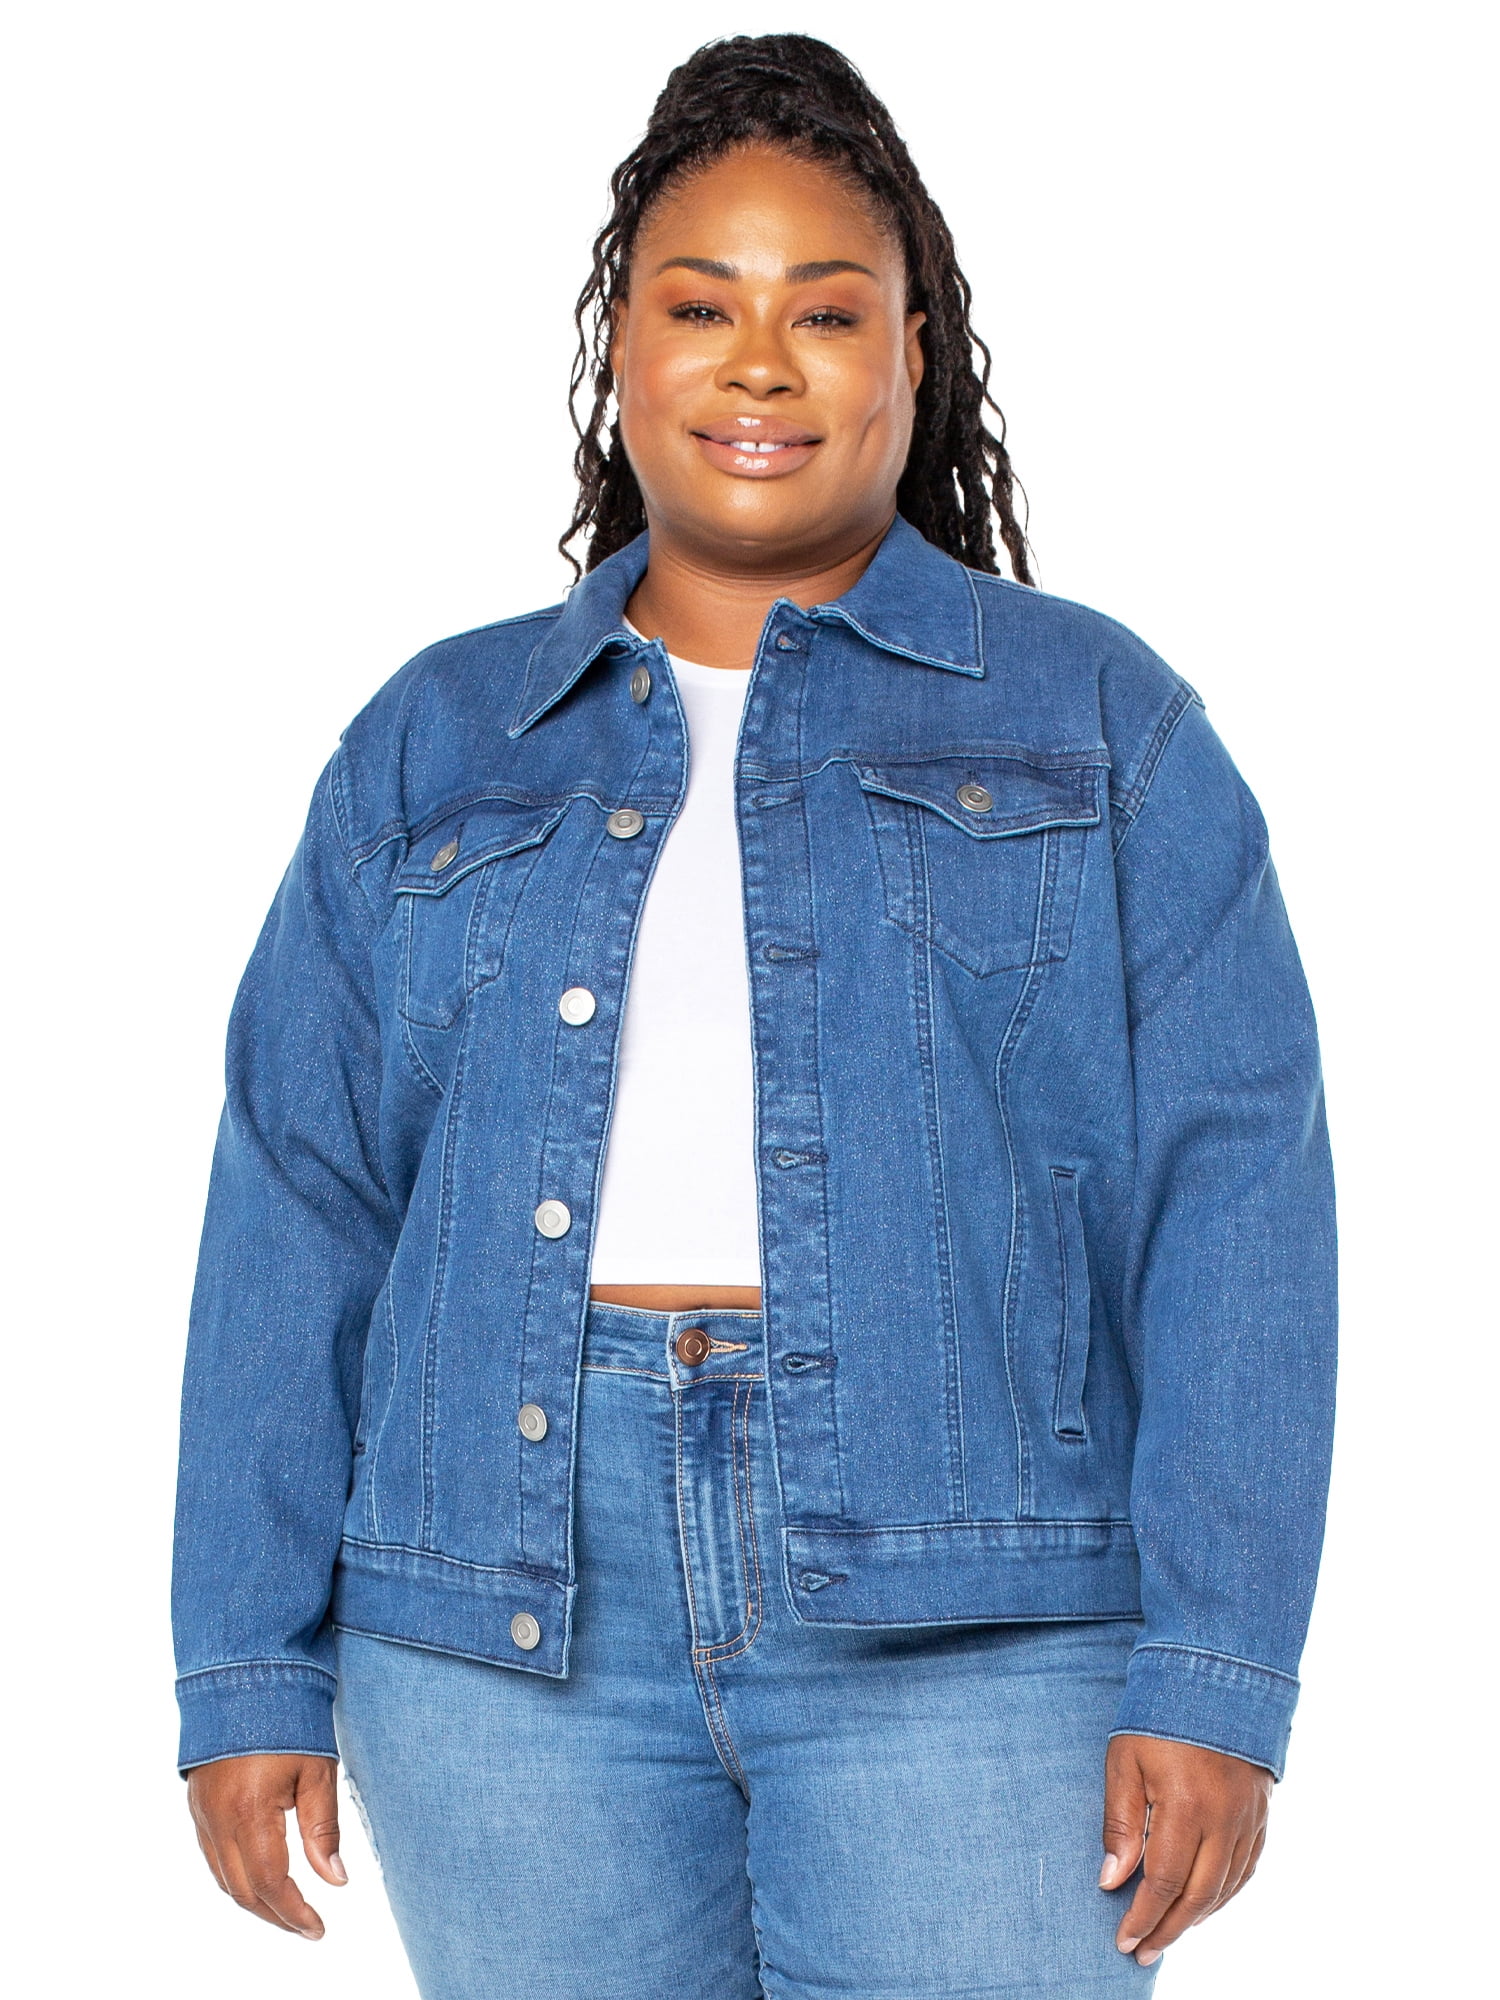 Women's Oversized Denim Jacket Ladies Plus Size Long Sleeve Jean Cropped  Jackets | eBay